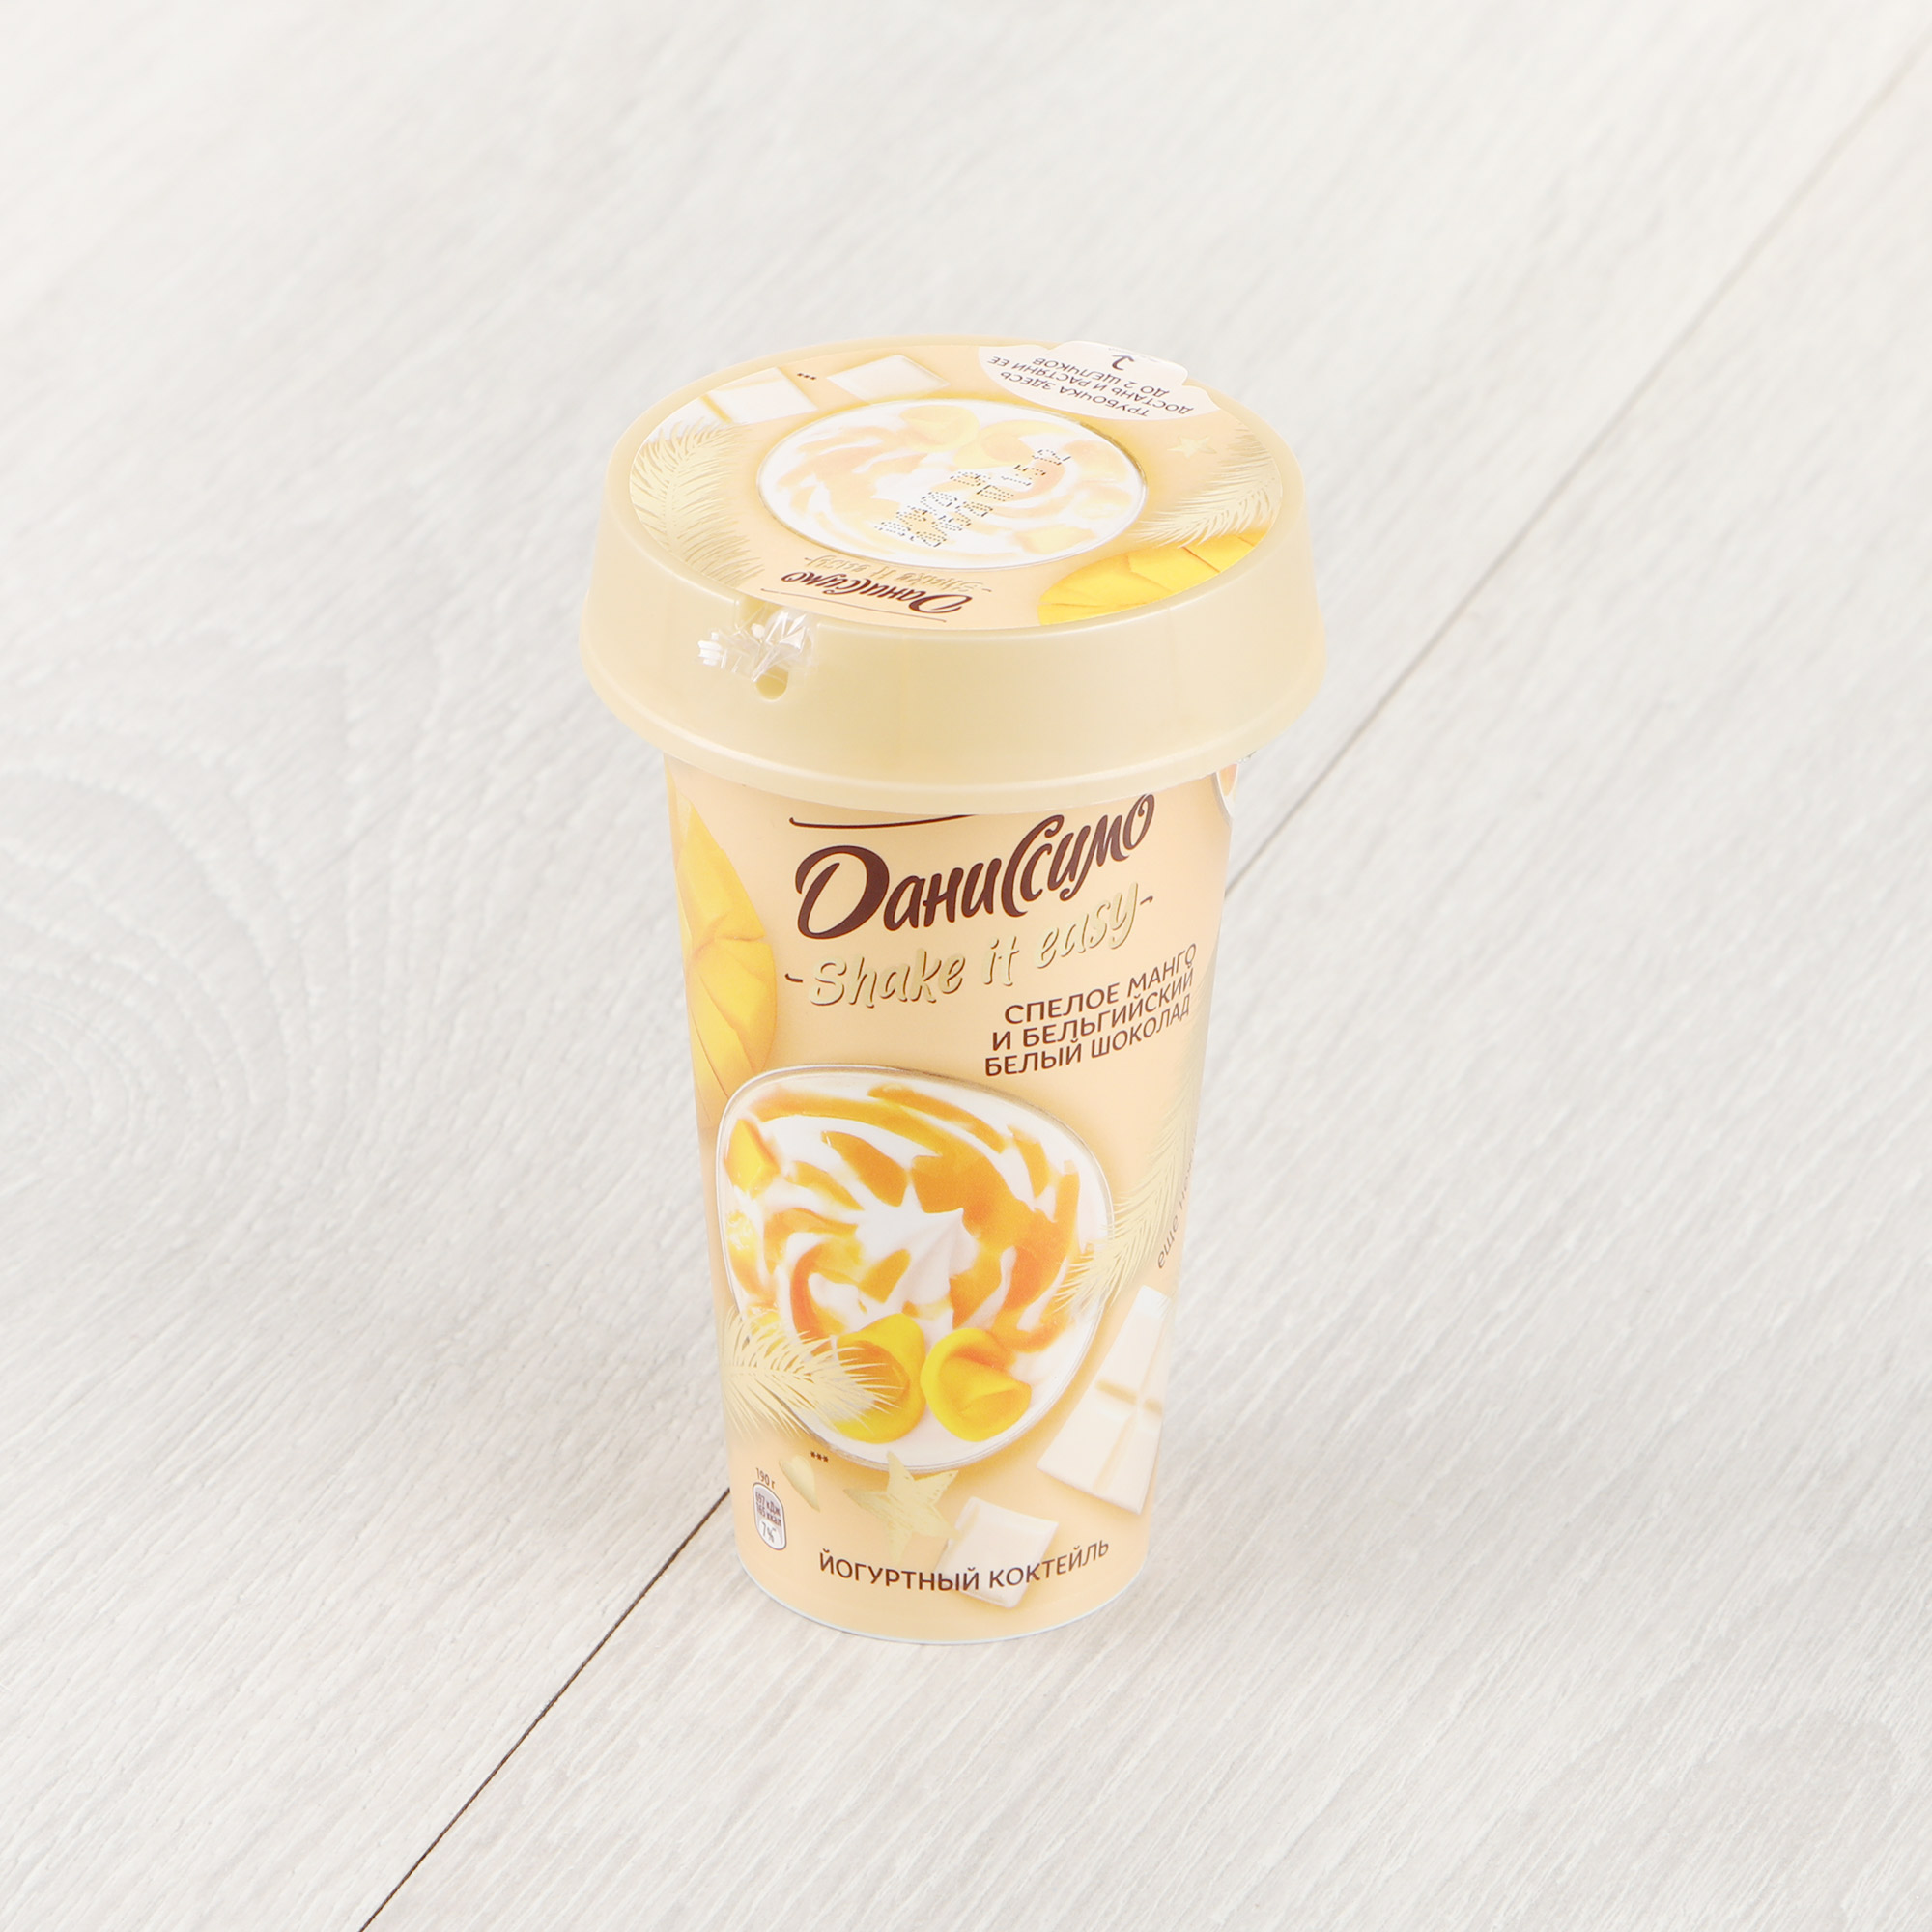 Коктейль йогуртный Даниссимо Shake&Go Спелое манго и бельгийский белый шоколад 2,7% 190 г